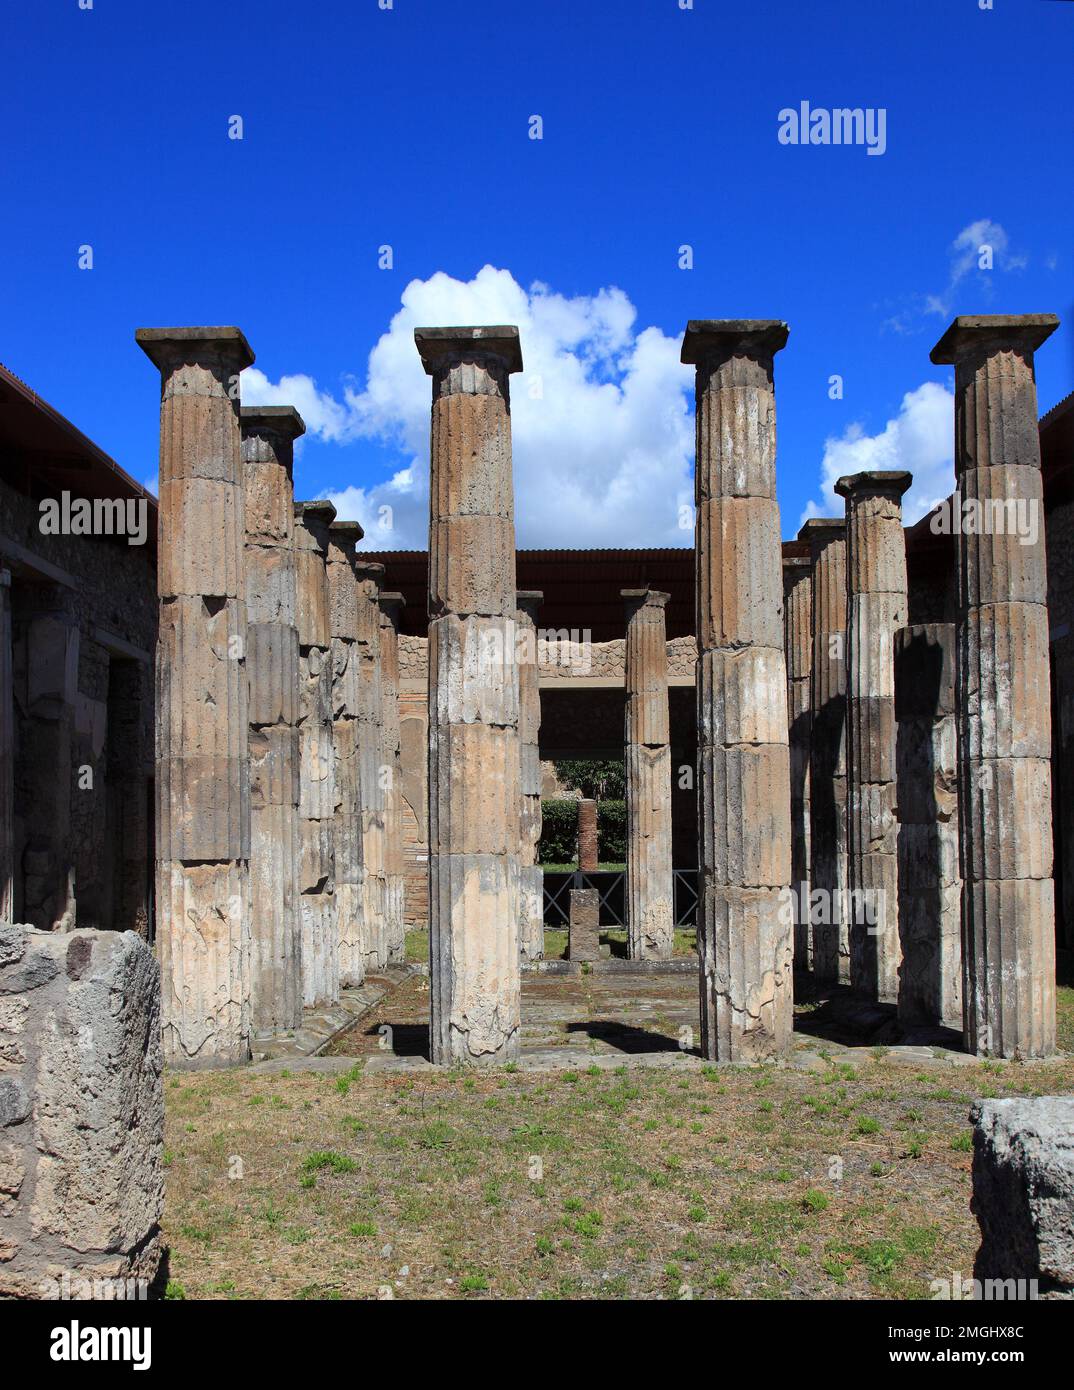 Casa degli Epidii, Pompeji, antike Stadt in Kampanien am Golf von Neapel, beim Ausbruch des Vesuvs im Jahr 79 n. Chr. verschüttet, Italien Stock Photo